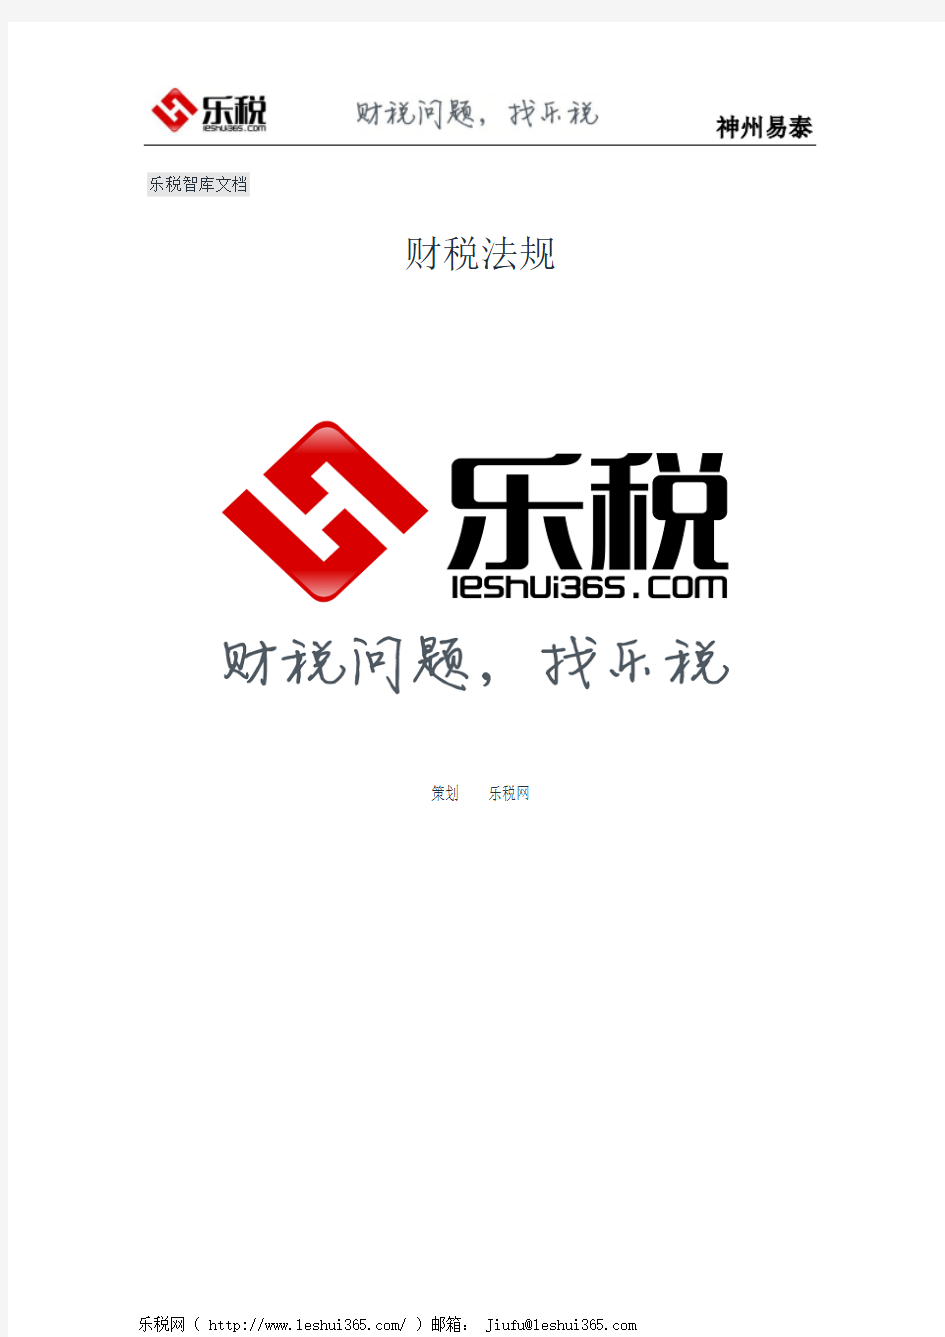 上海市人民政府发布关于本市贯彻国务院所得税收入分享改革方案意